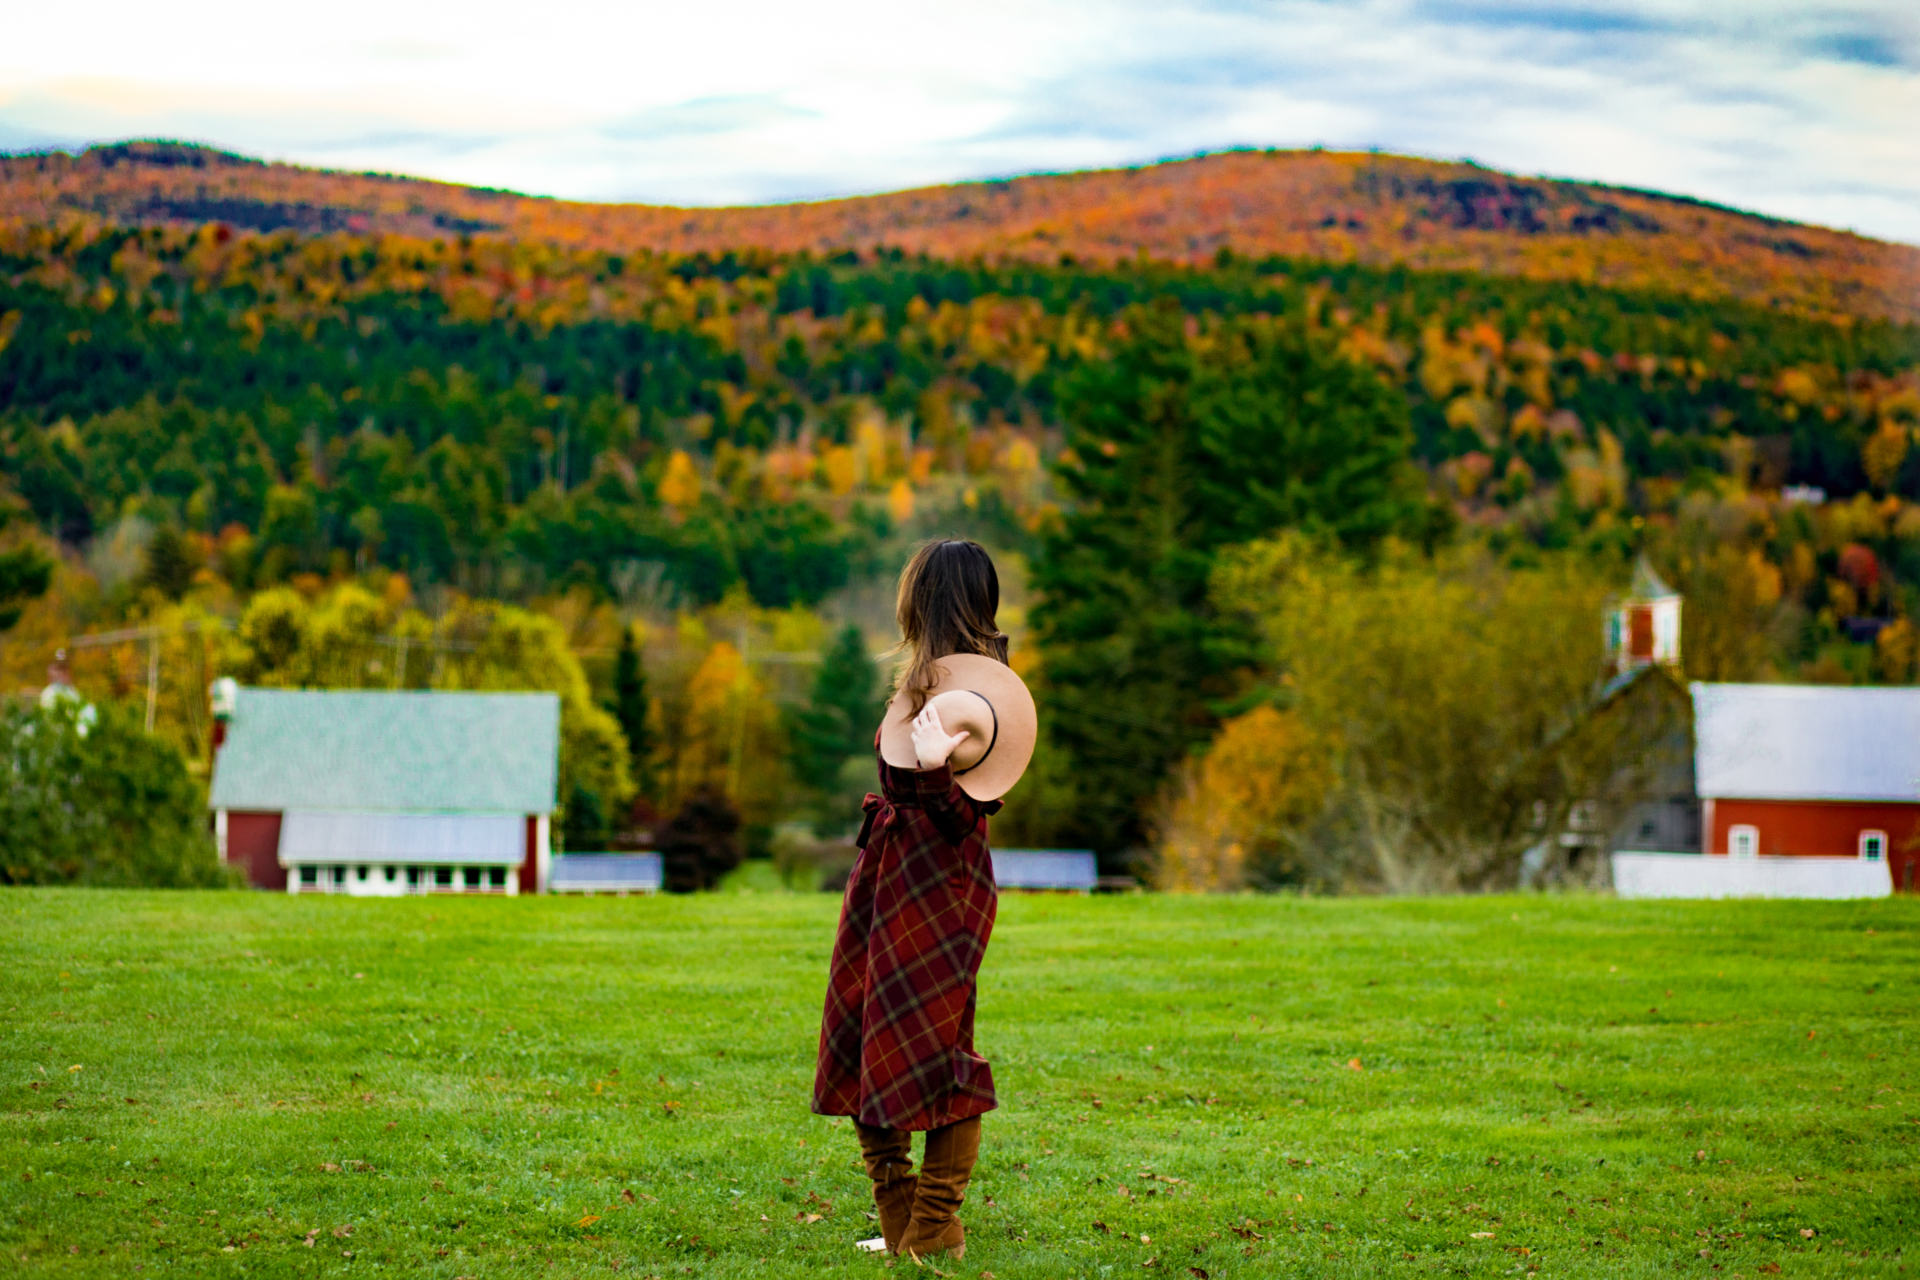  Oben 5 Scenic Drives in Vermont in diesem Herbst von Top-US-Reiseblogger, Shannon Shipman